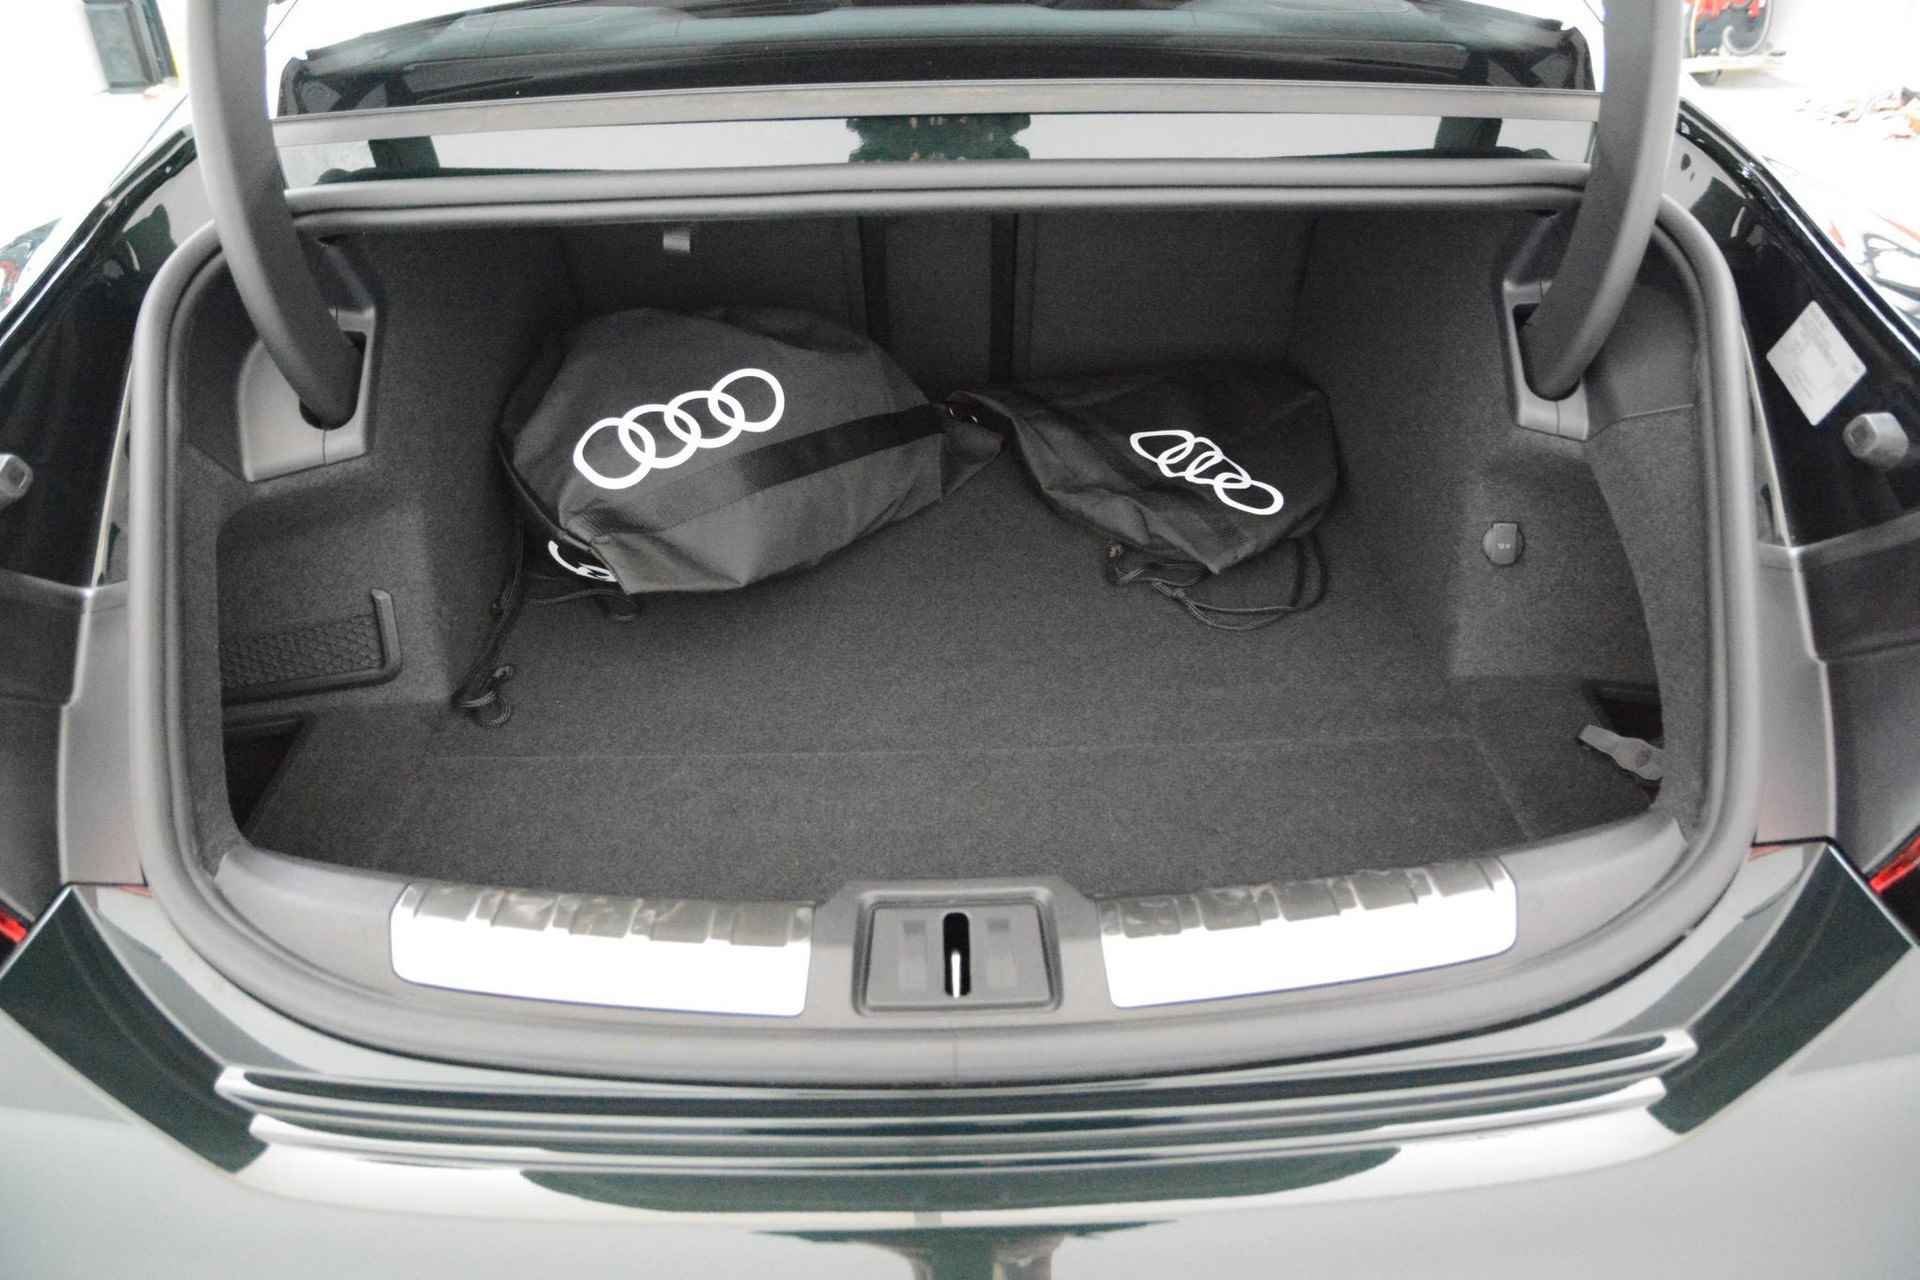 Audi e-tron GT GT Competition 93 kWh 476 PK | Nieuw | NU VAN € 143.900,00 VOOR € 123.900,00!!!! | UNIEKE KLEUR TIEFGRUN ENIGE IN NL!!! | Navigatie | Maxtrix-Laser koplampen | 360 camera | Autonome parkeerfunctie | Dynamische vierwielbesturing | Dodehoek detectie | Glazen panoramadak | Head-up display | Dynamiekpakket plus | Audi virtual cockpit plus | Stoelverwarming voor en achter | Lichtpakket plus ambient light | Optiekpakket zwart plus - 21/30